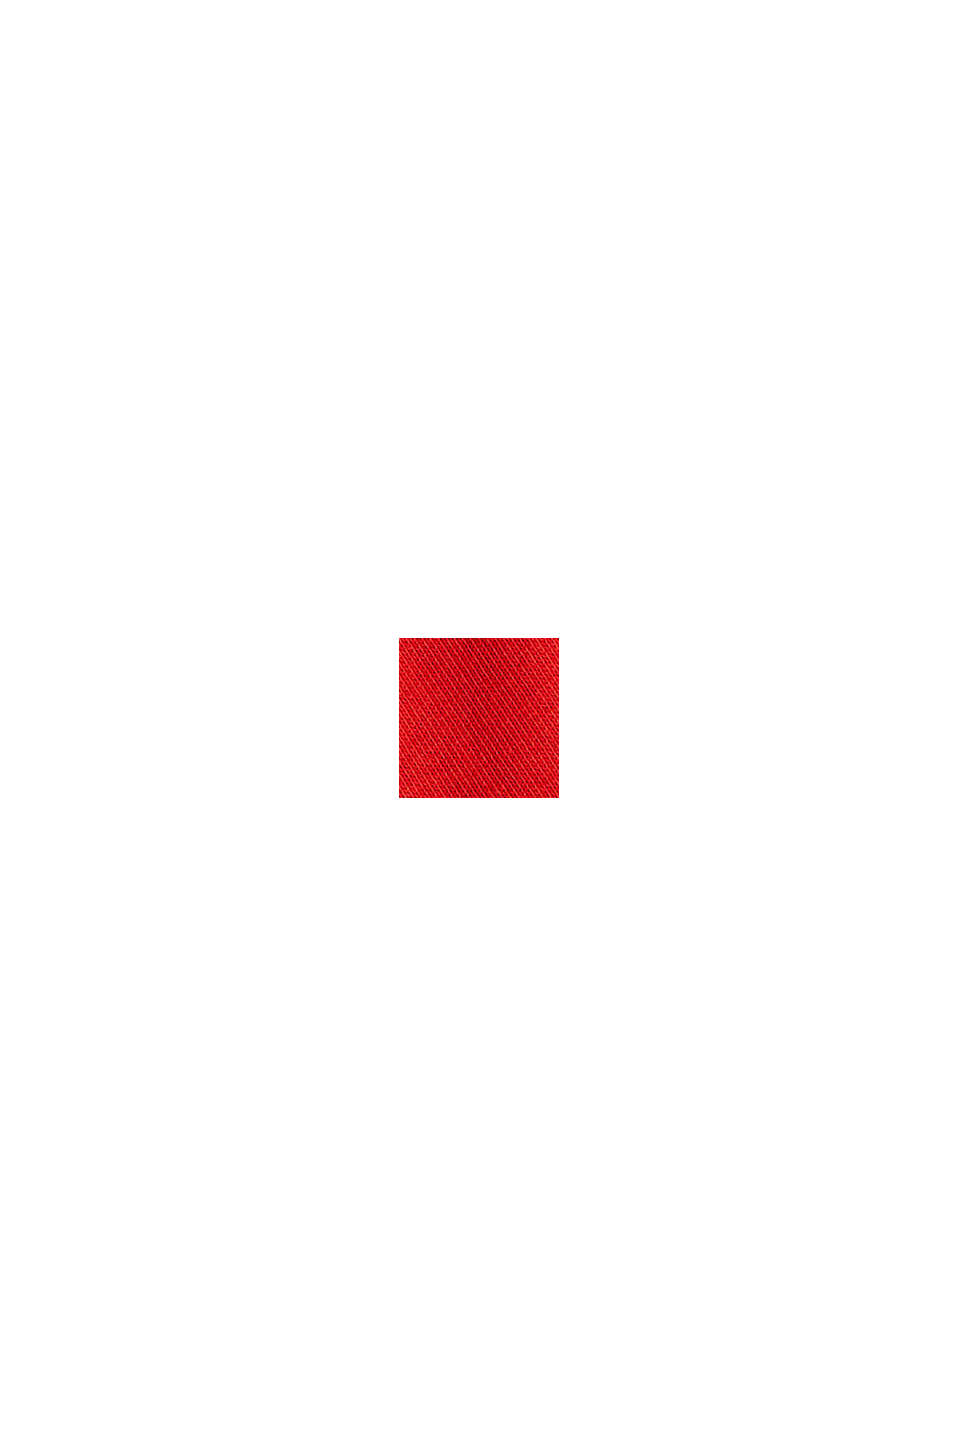 Sudadera con bordado del logotipo, mezcla de algodón, ORANGE RED, swatch